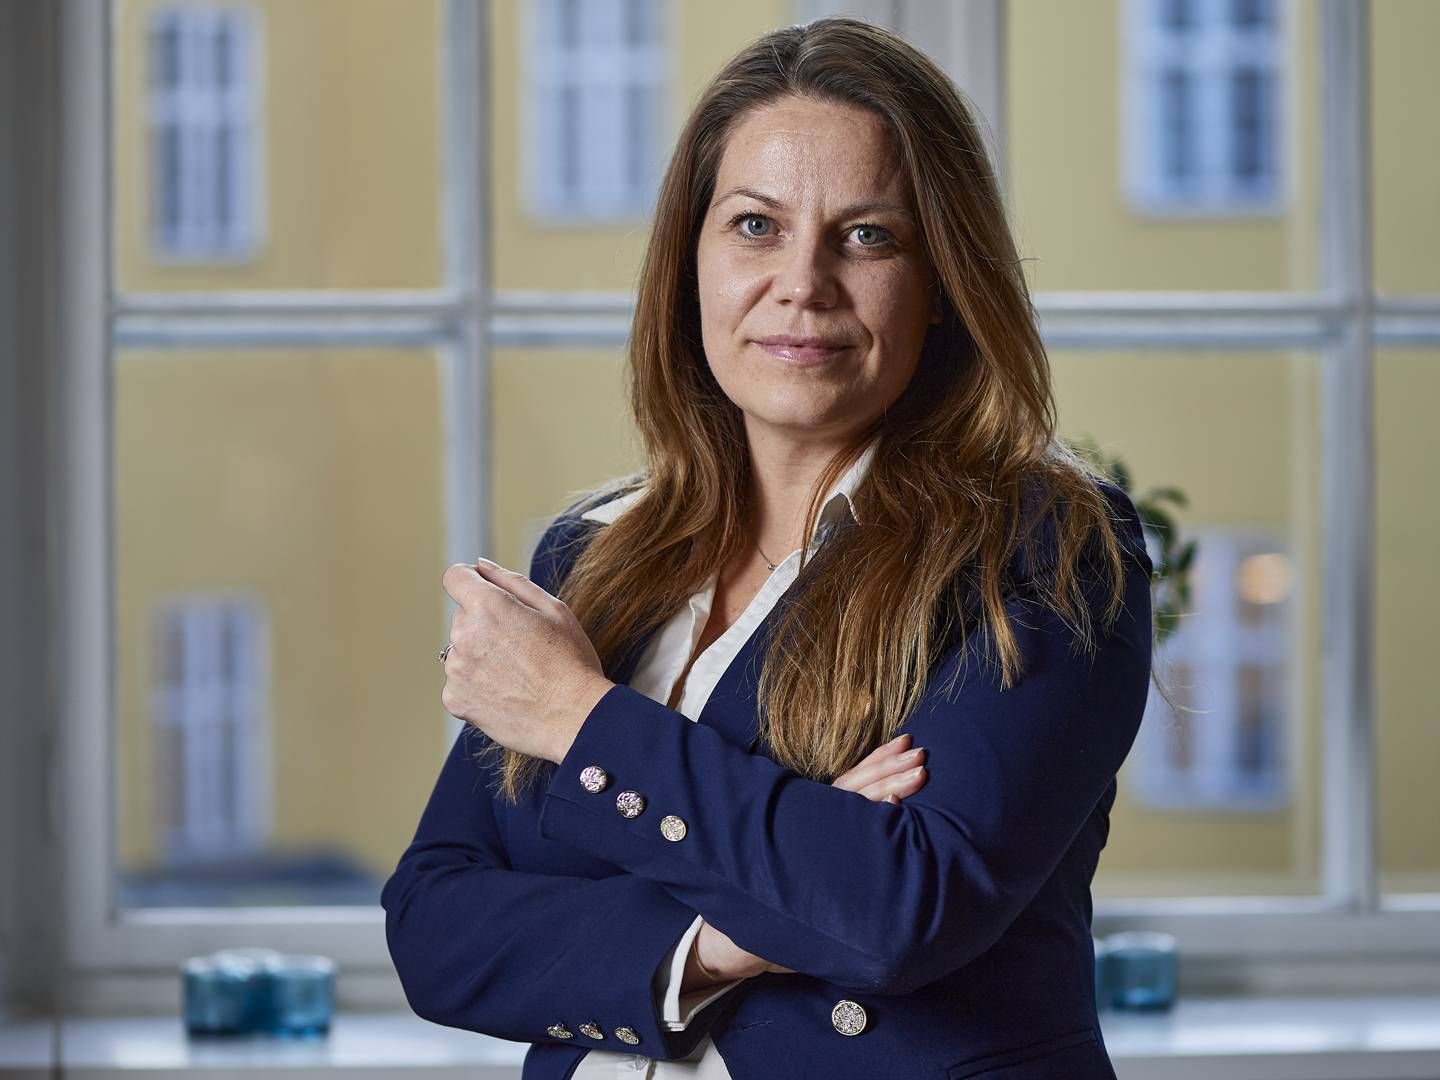 Linda Lindborg har været salgsansvarlig for techselskabet Boomi Danmark siden 2017 og har tidligere arbejdet for blandt andet Dell og Lenovo. | Foto: PR